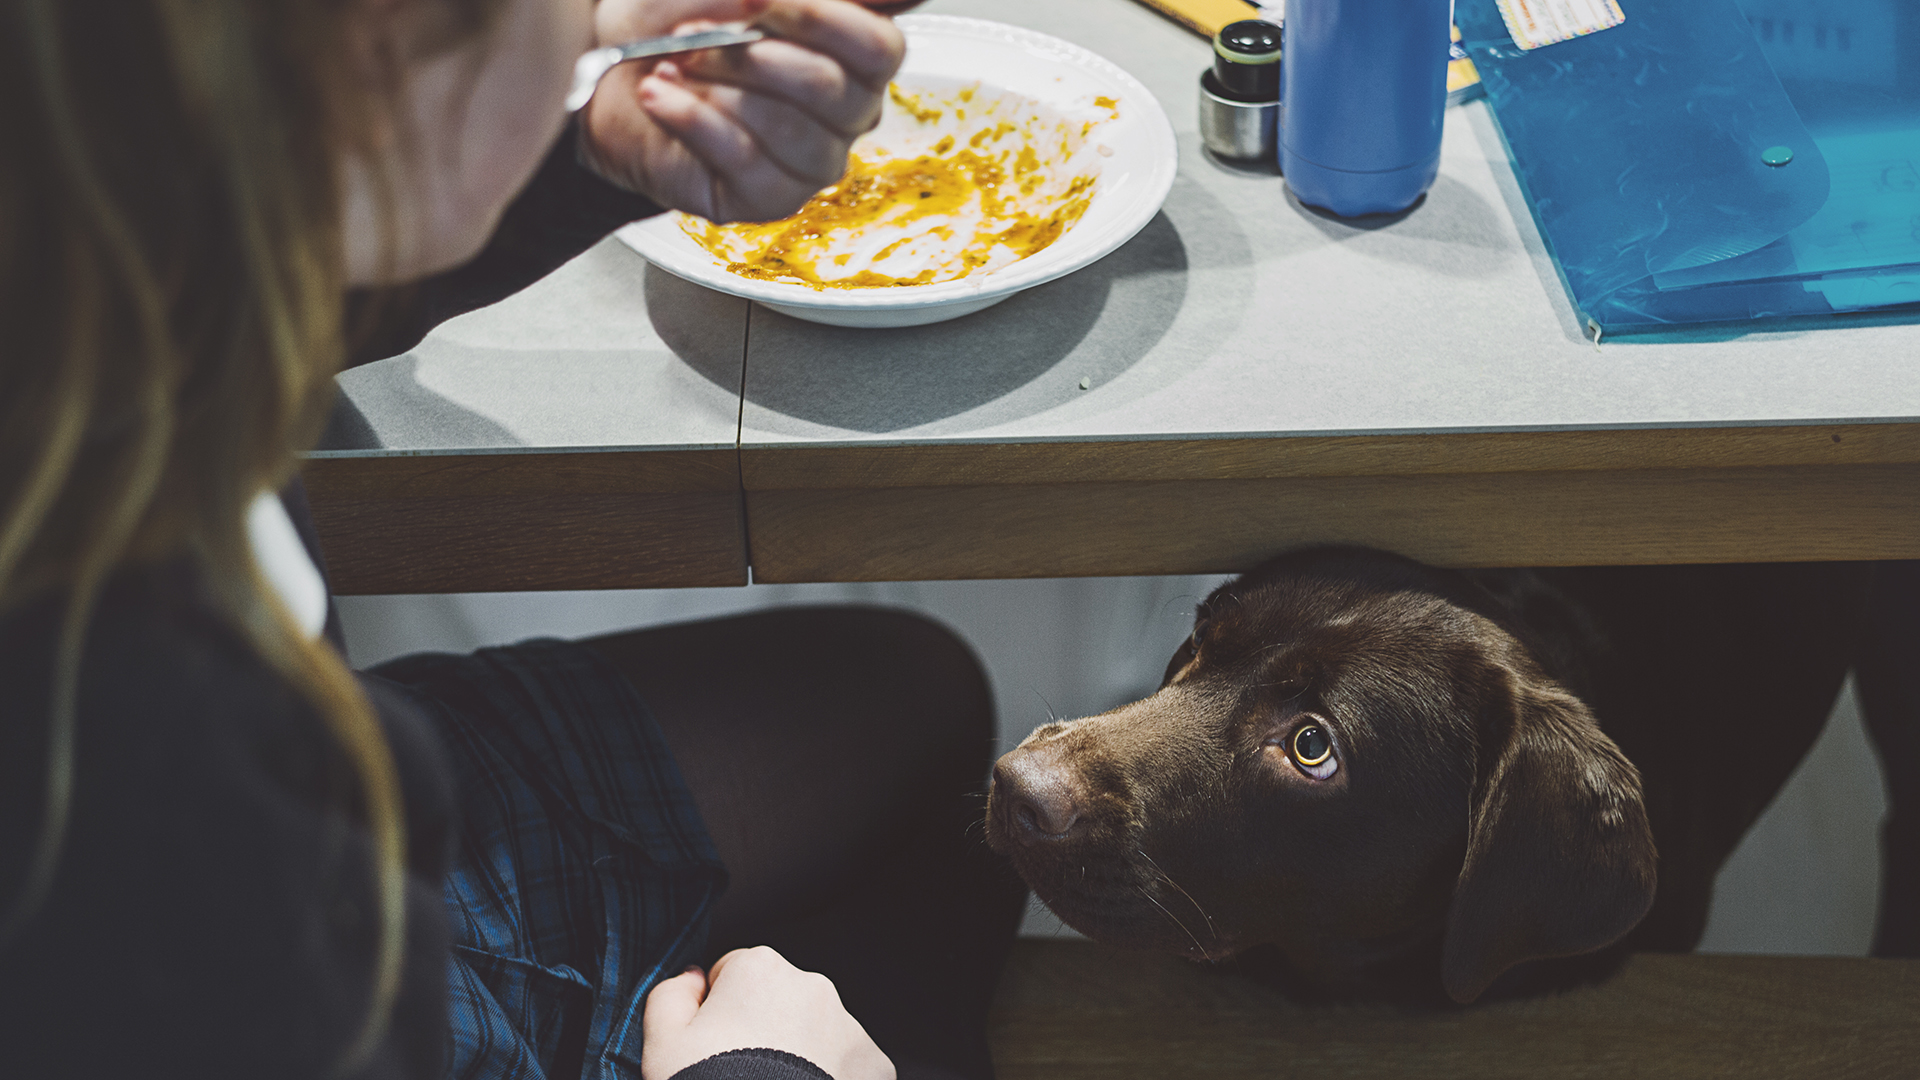 El hábito de los perros de pedir comida en la mesa puede revertirse gracias a 12 consejos simples
(Getty Images)